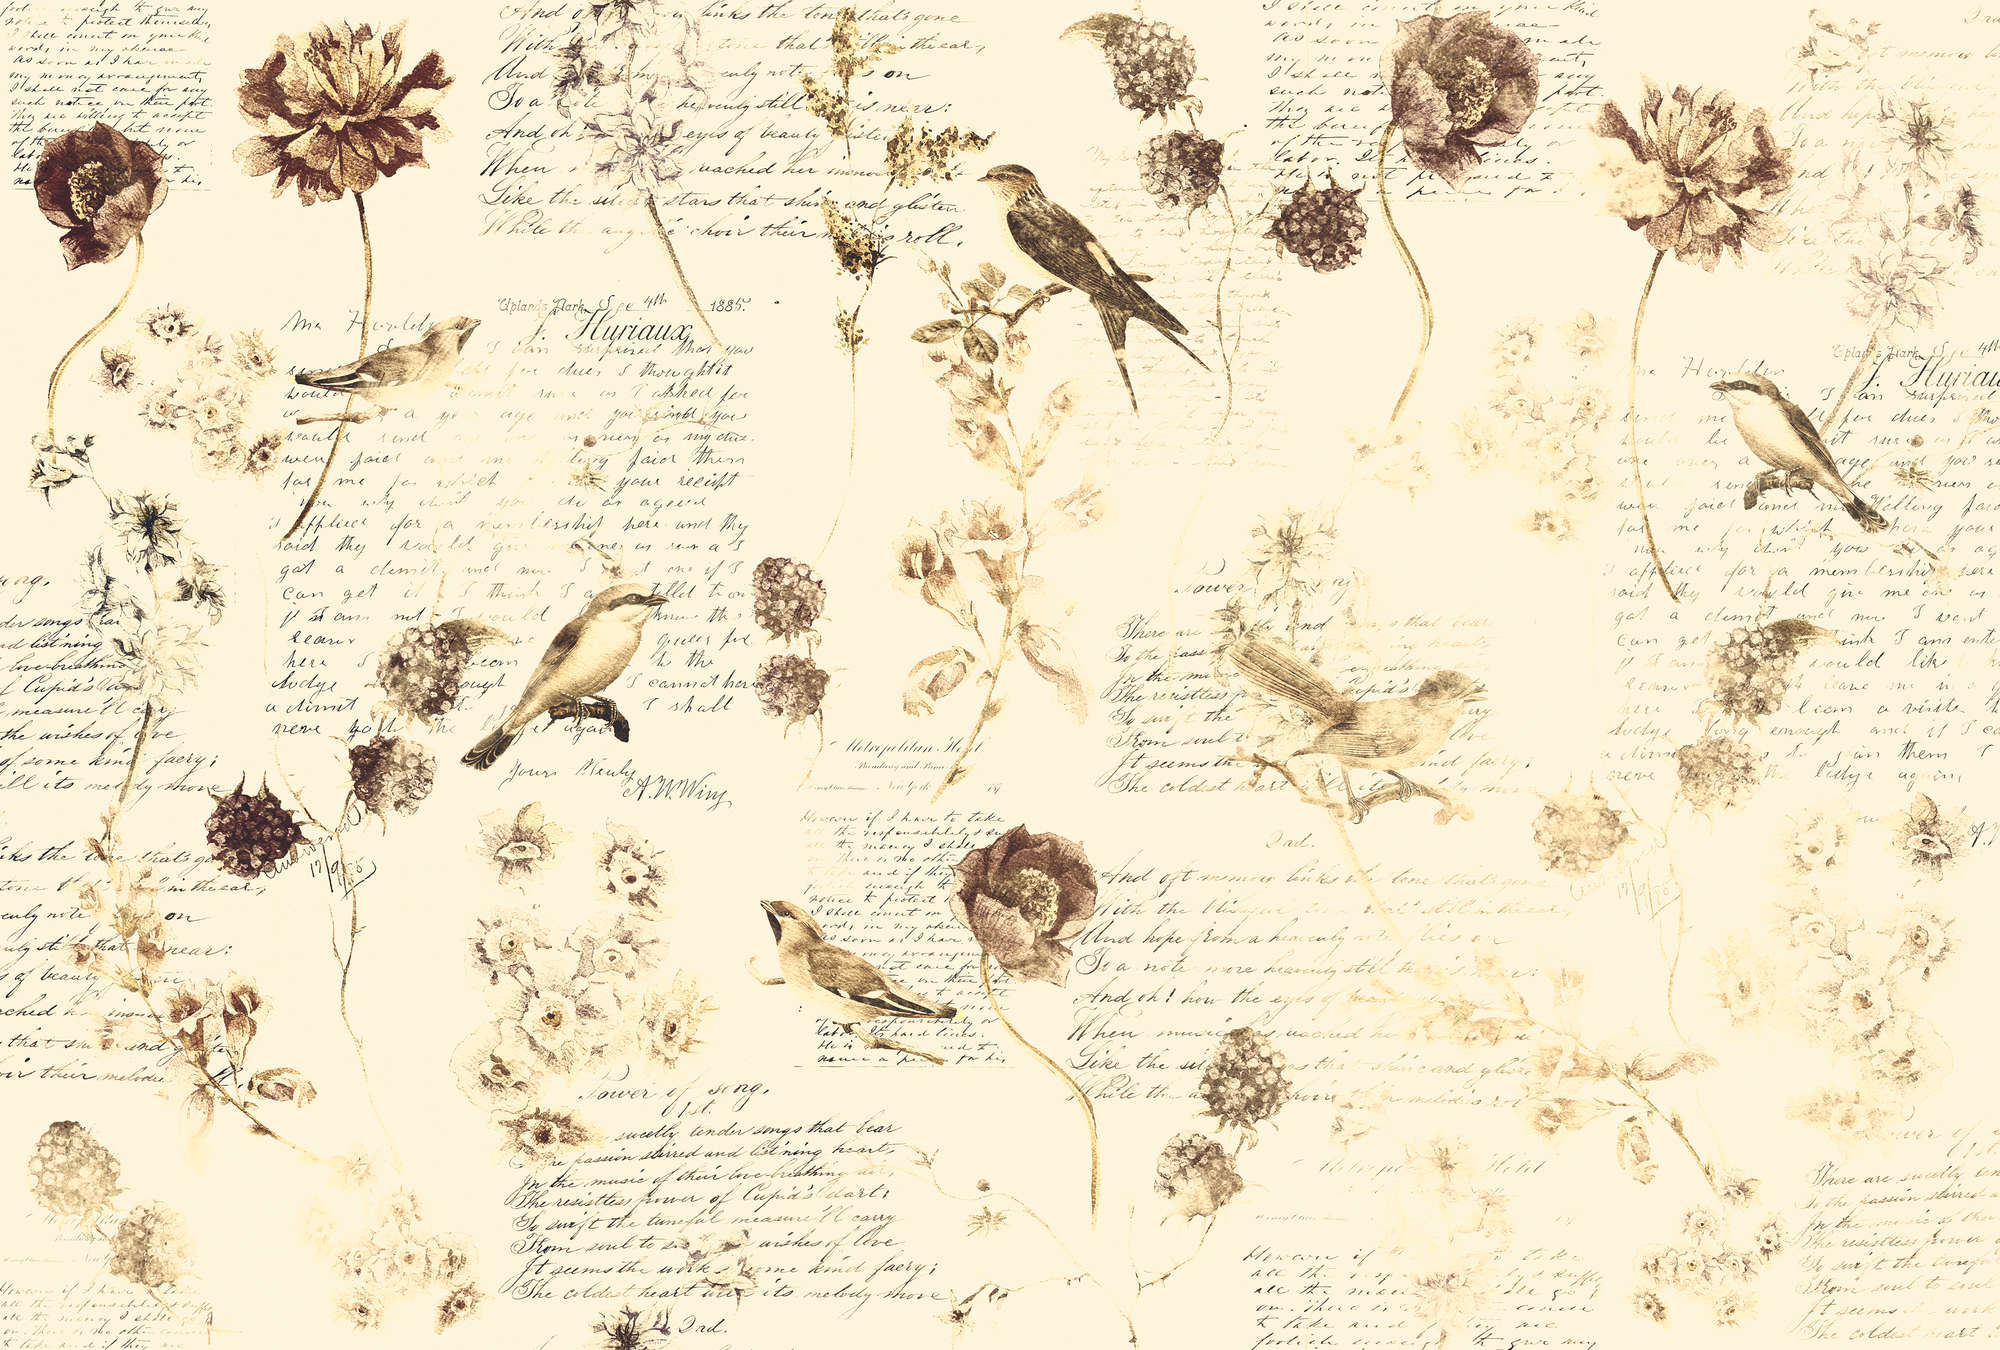             Muurschildering romantisch met bloemen & handschrift decor - crème, bruin, beige
        